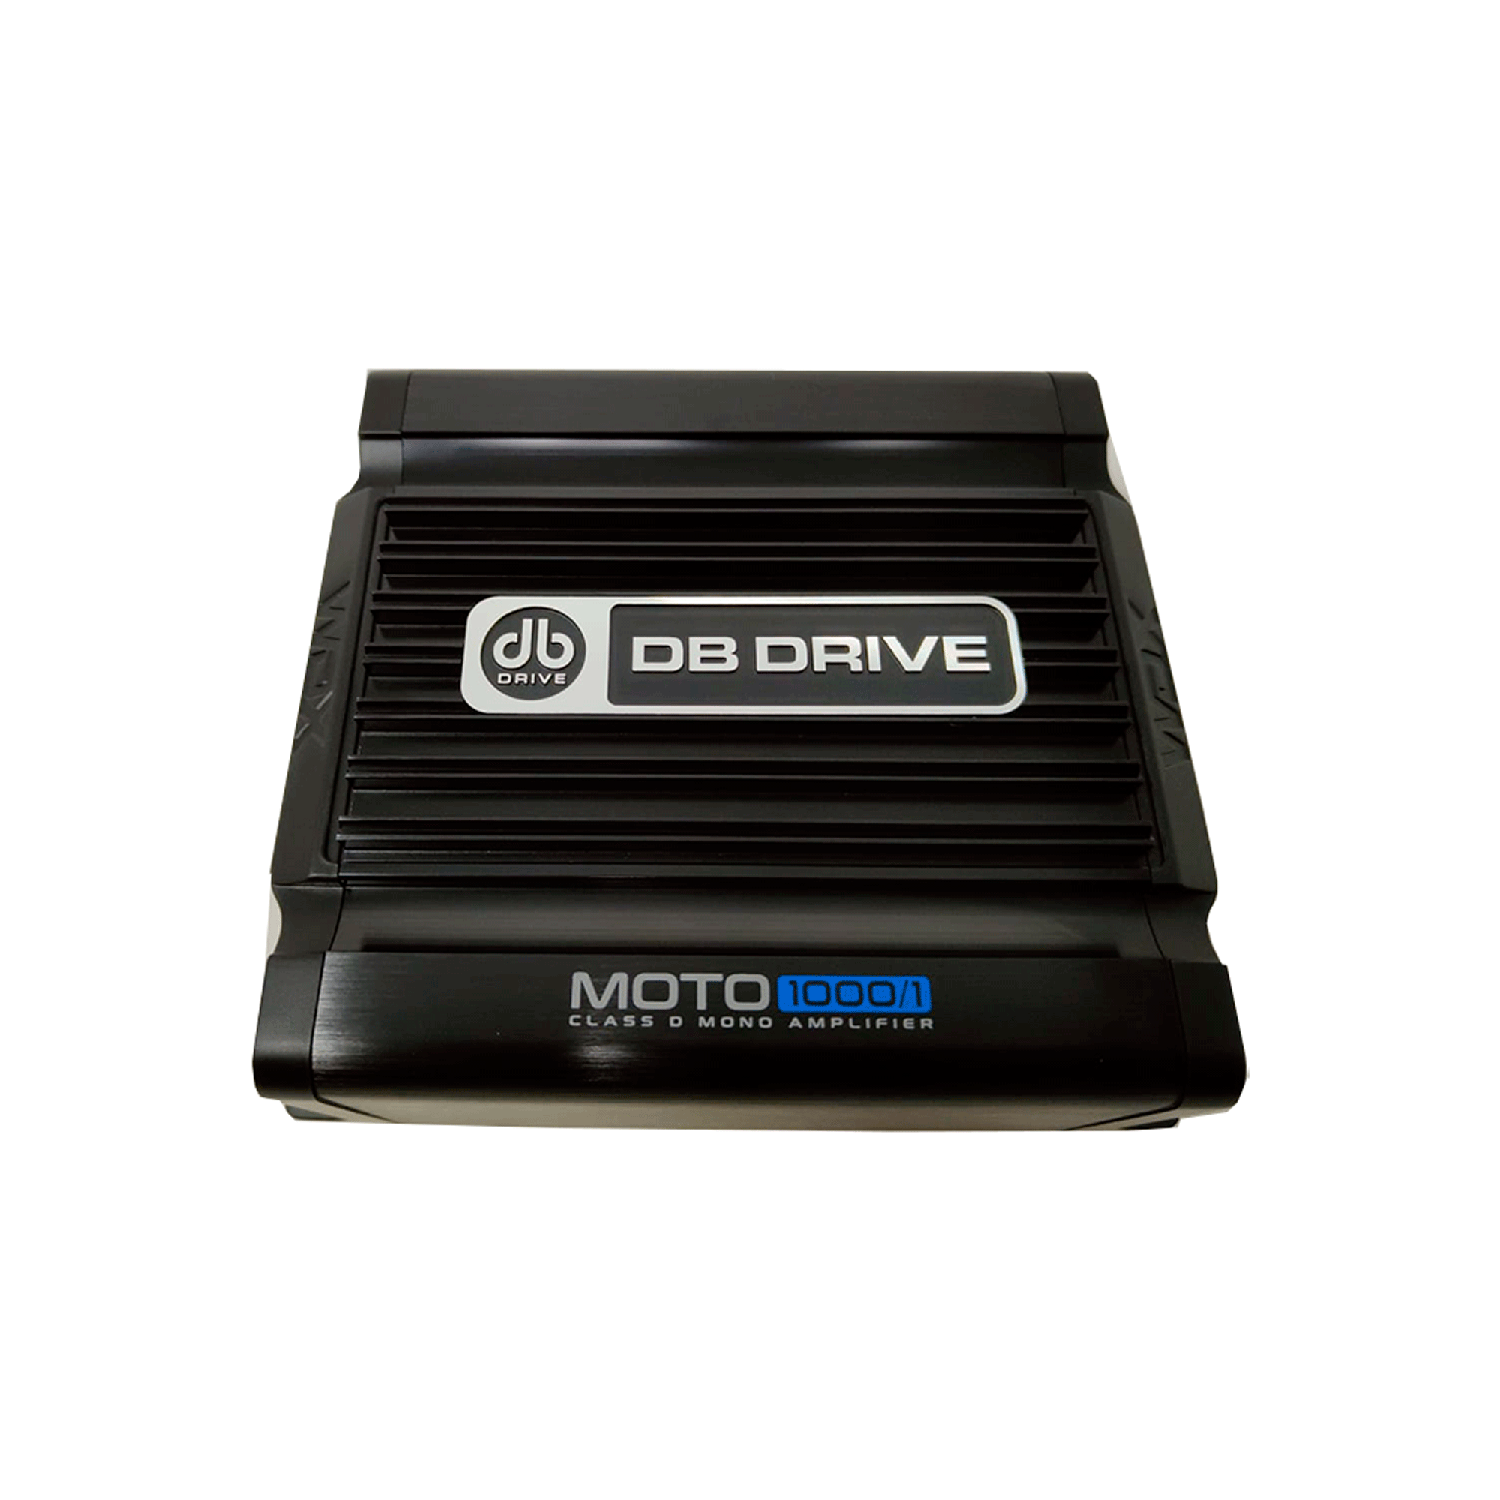 Amplificador Mini Marino DB Drive MOTO1000/1 1000w Clase D